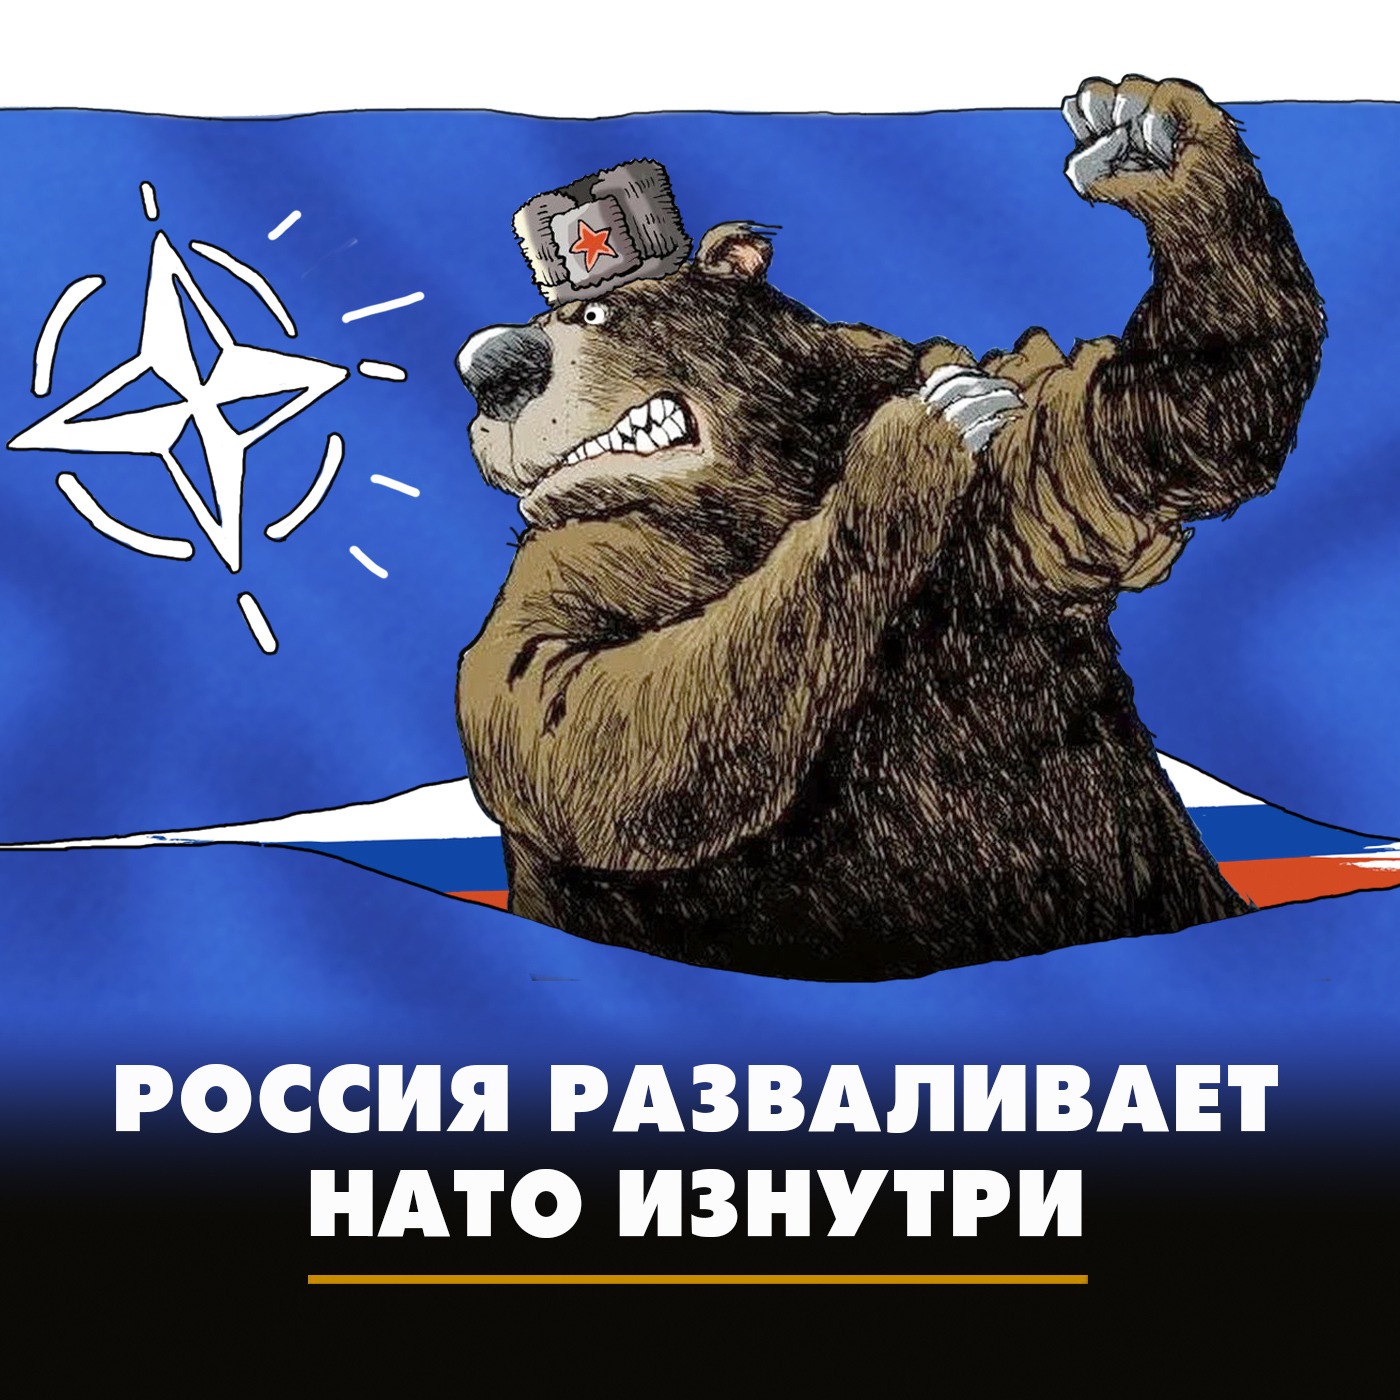 Россия разваливает НАТО изнутри